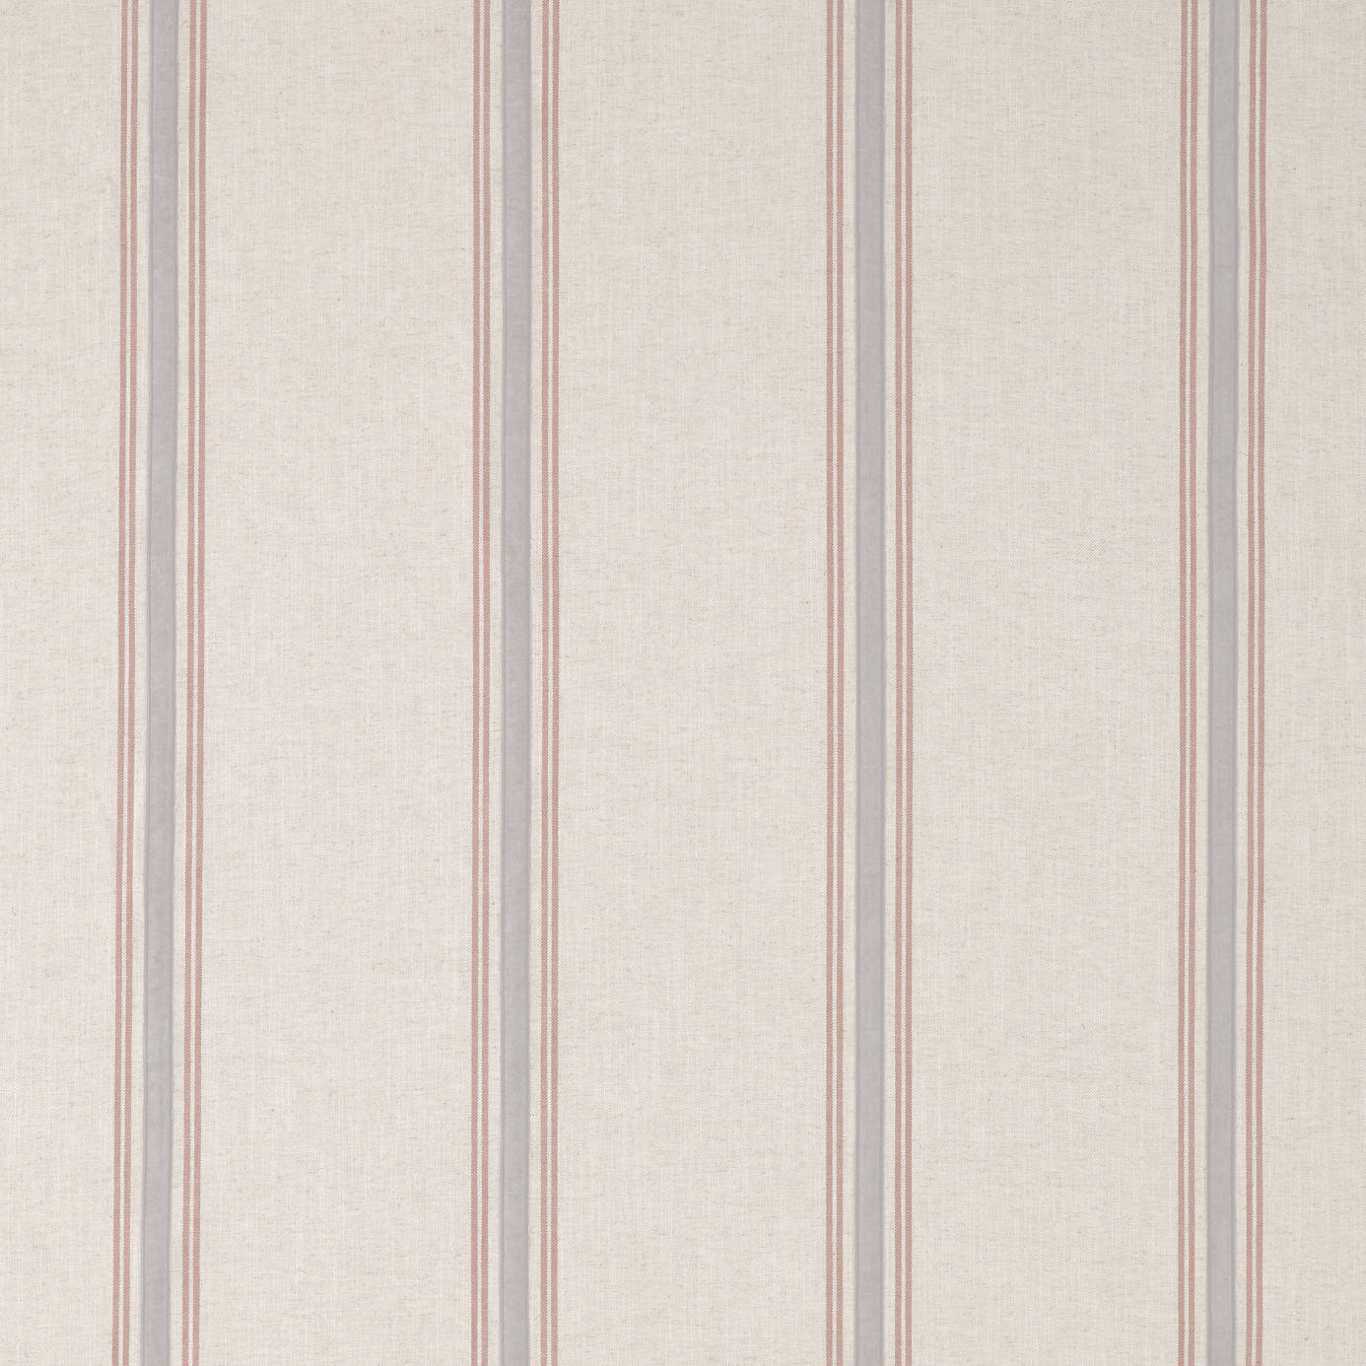 Hockley Stripe Brick Fabric by SAN